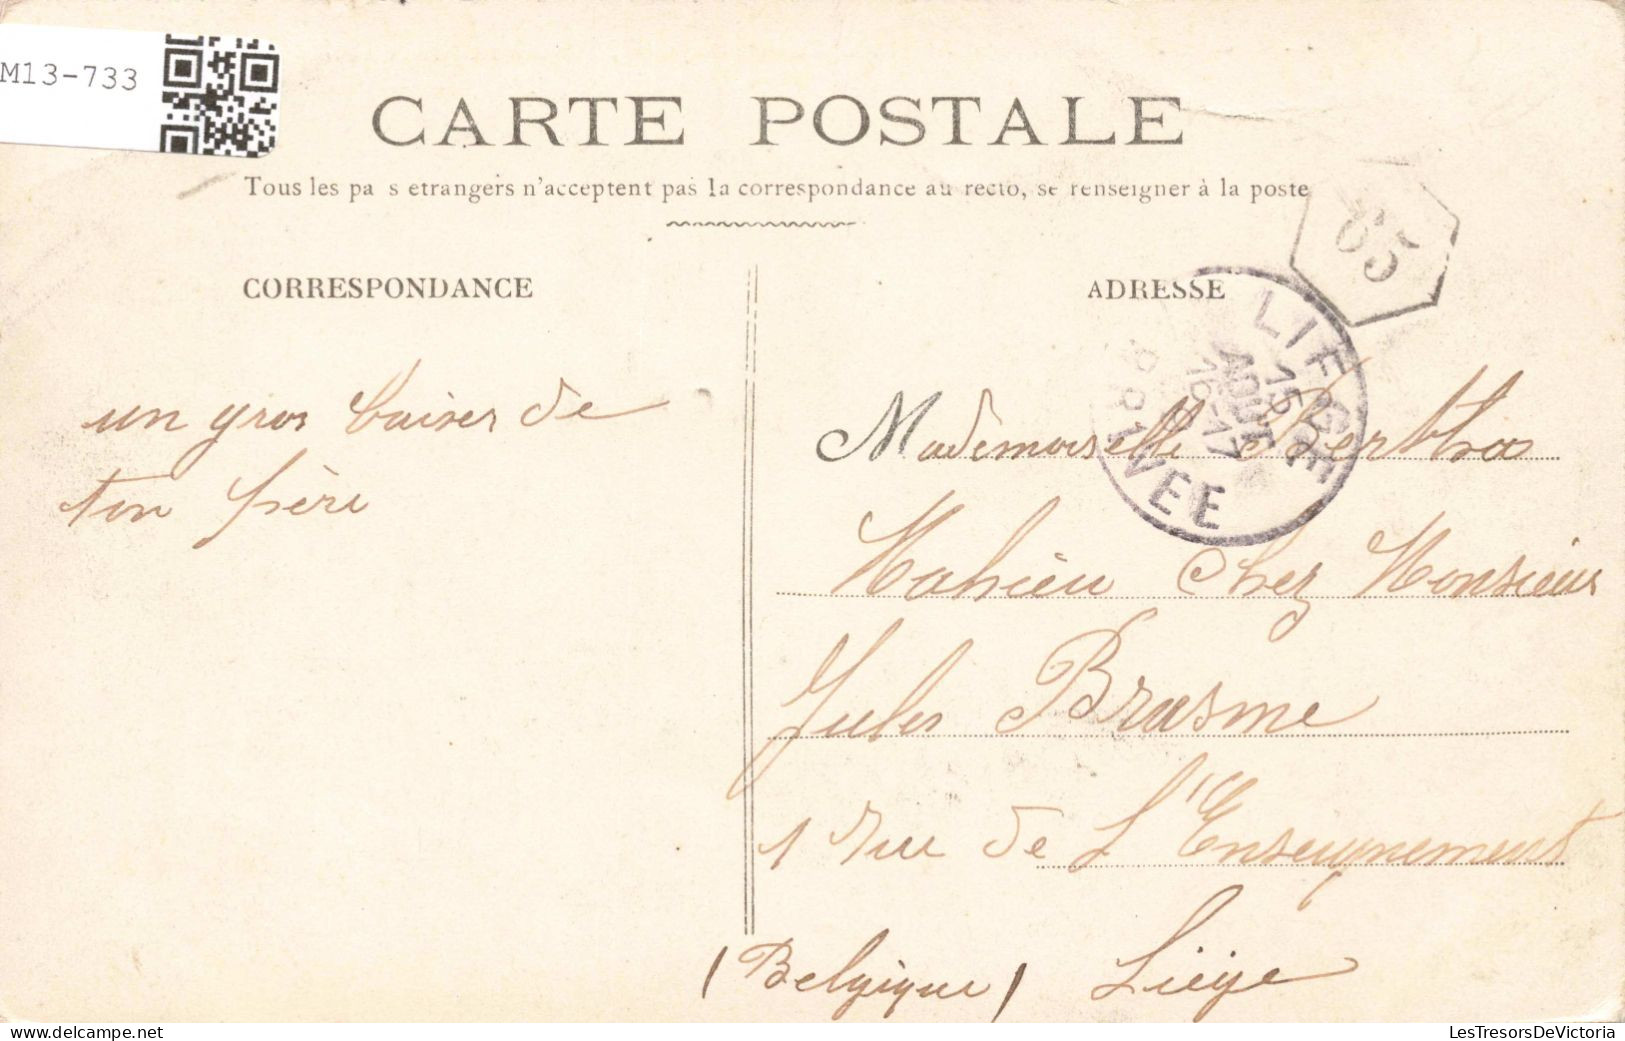 FRANCE - Paris - Place De La Chapelle - Gare Aux Marchandises - Carte Postale Ancienne - Markten, Pleinen